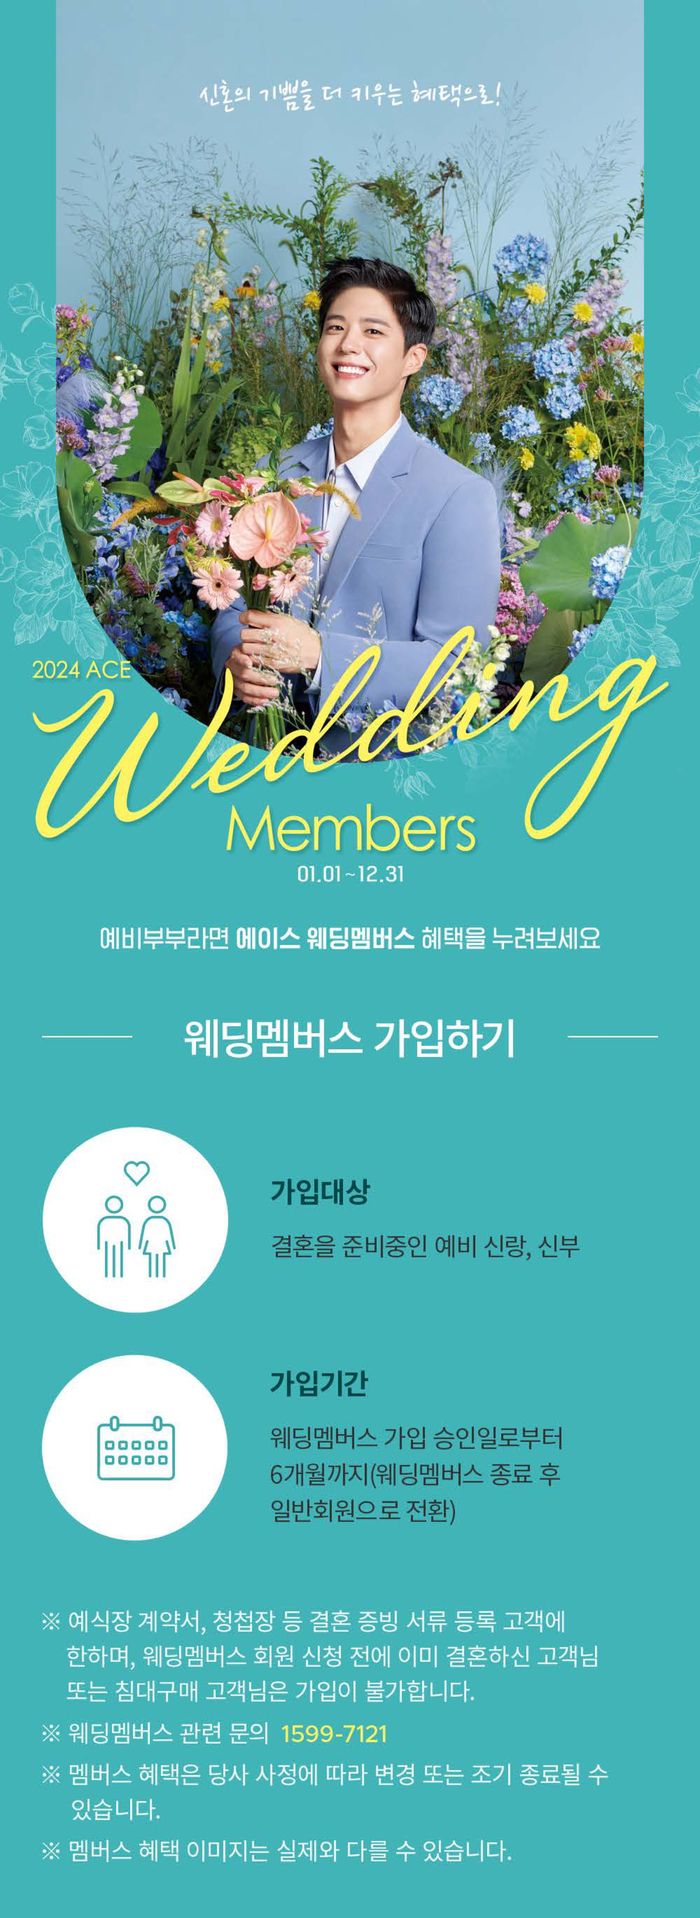 일산시의 에이스침대 카탈로그 | Weeding Members | 2024. 1. 26. - 2024. 12. 31.